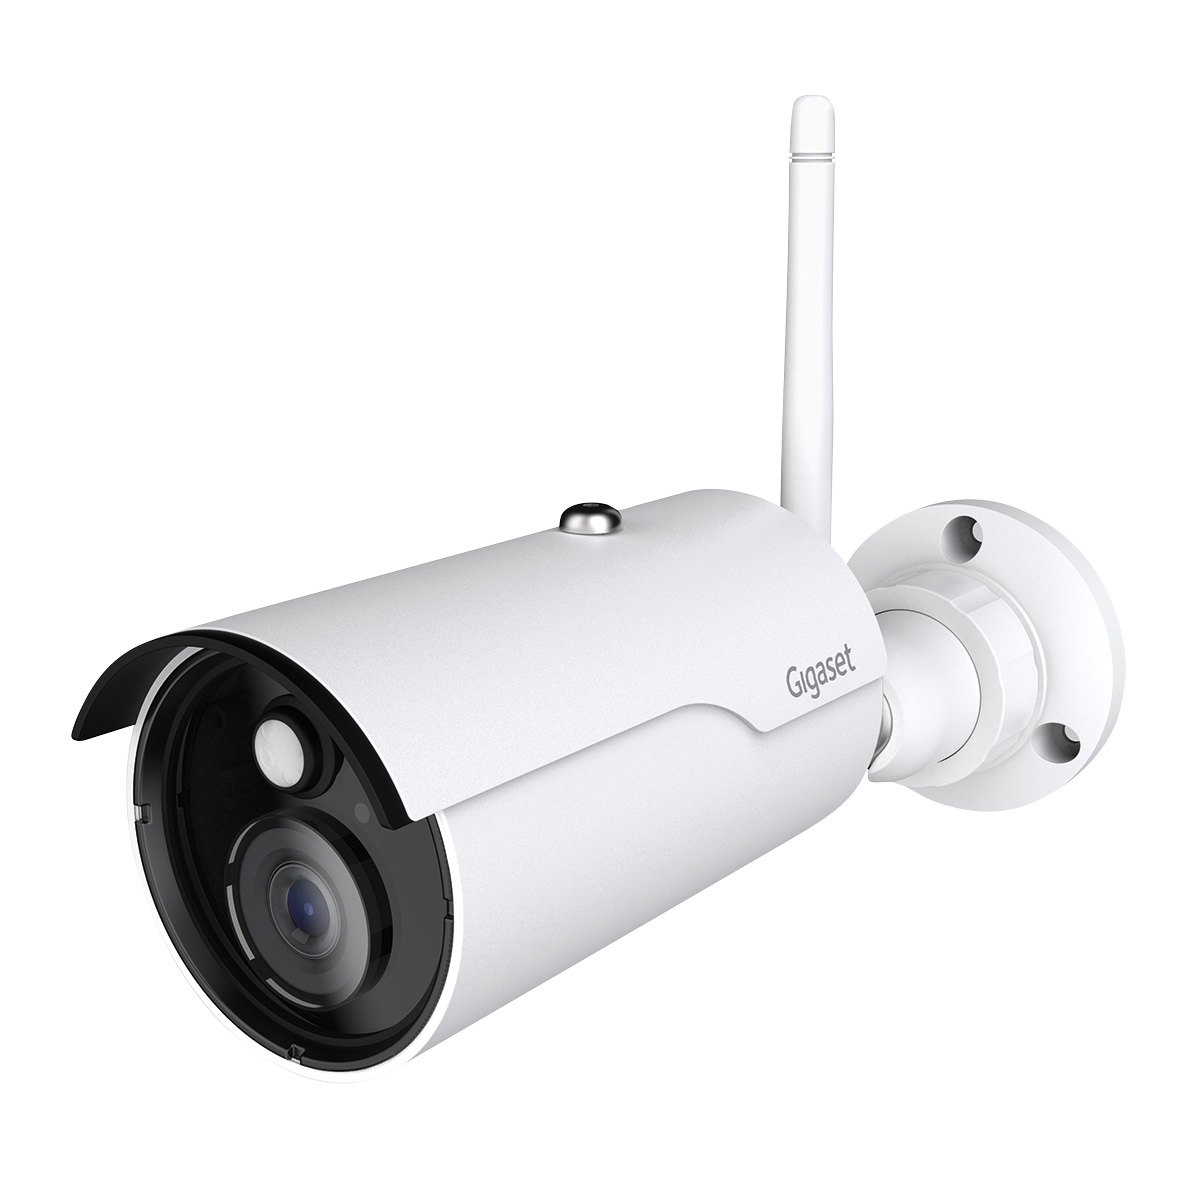 Gigaset WLAN-Kamera Haus-Überwachung in HD-Qualität Ech mit Personenerkennung 